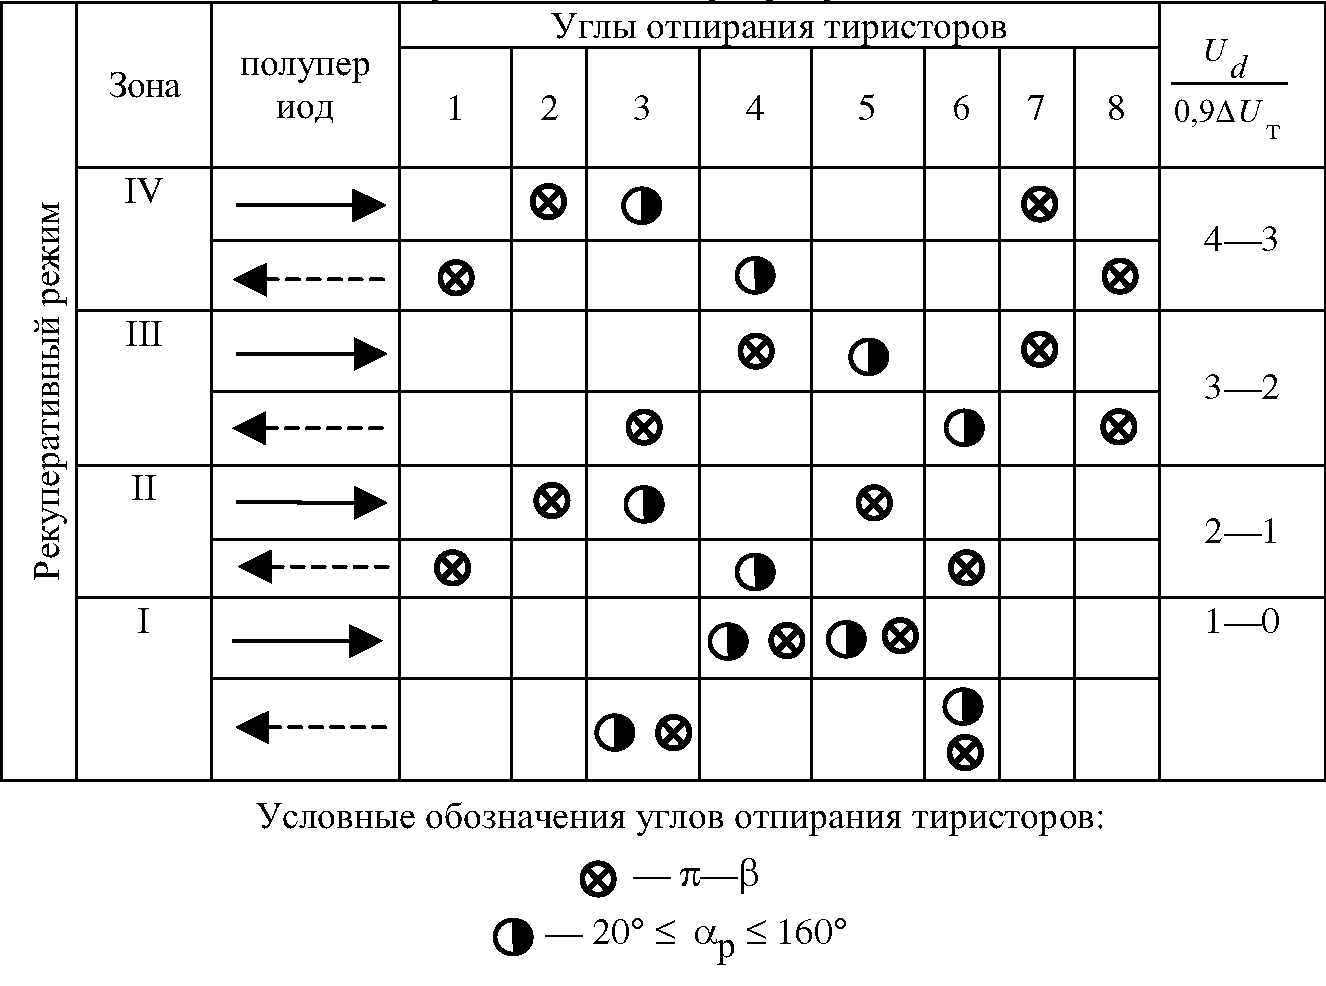 Сравнение работы силовой цепи электровоза в режимах тяги и рекуперации 